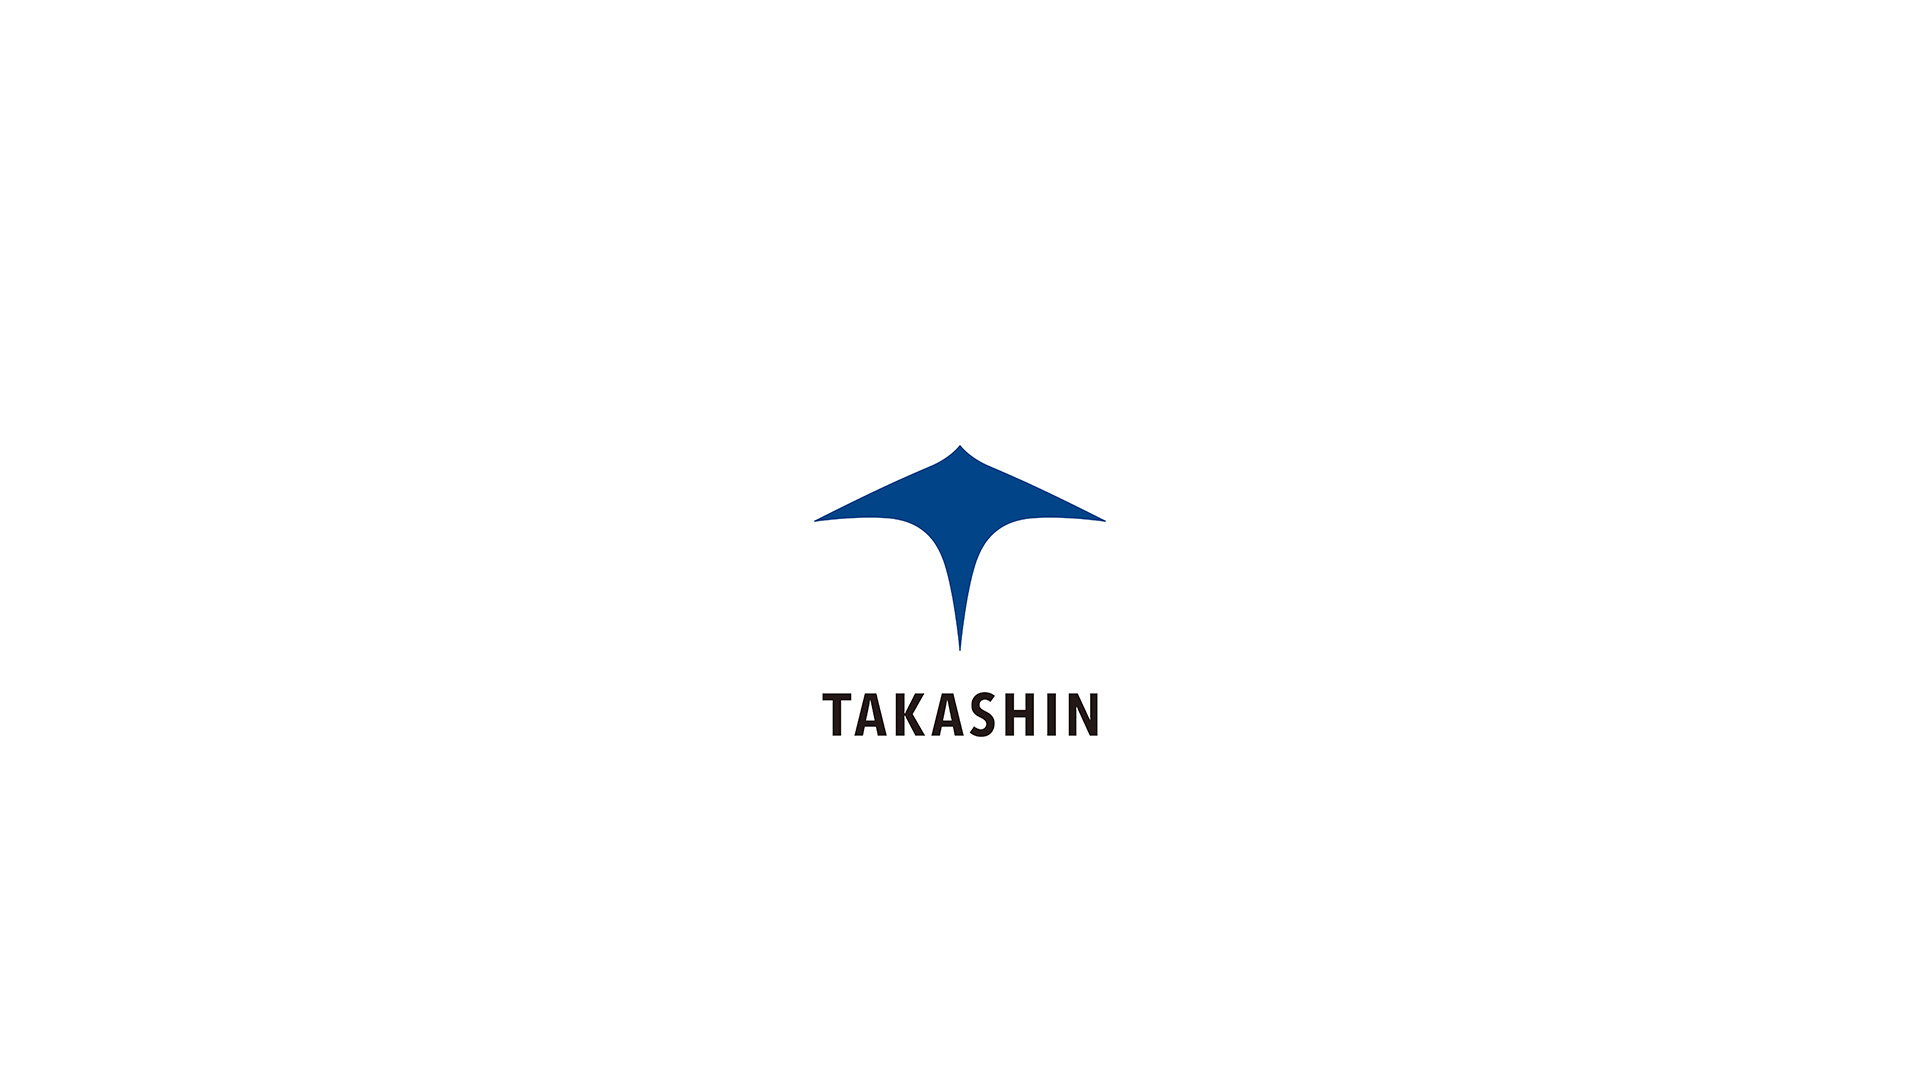 TAKASHIN